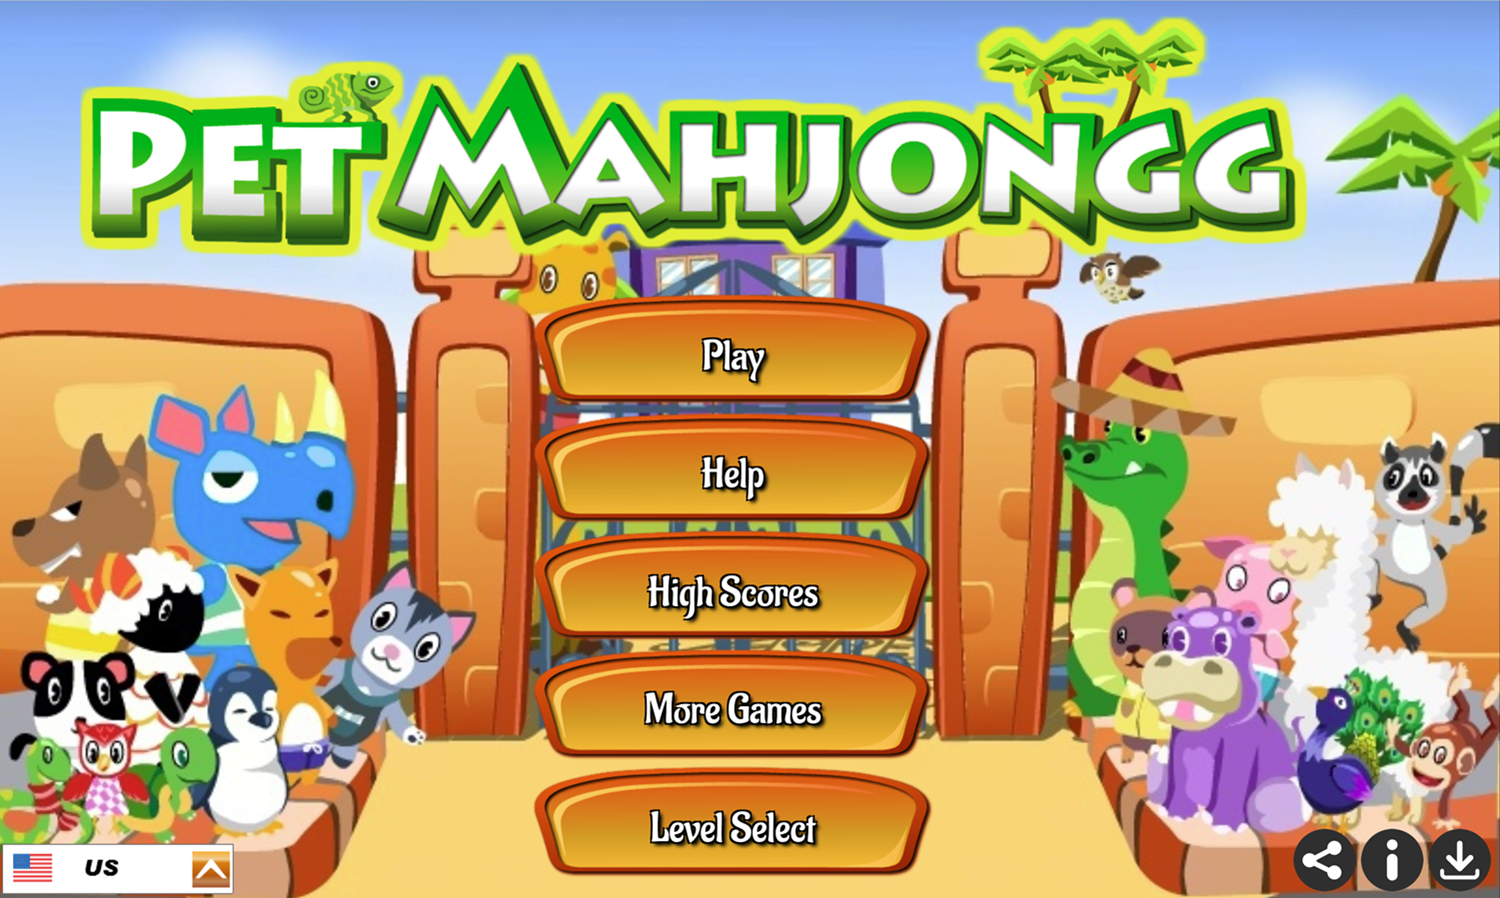 Pet Mahjongg Game Welcome Screen Screenshot.